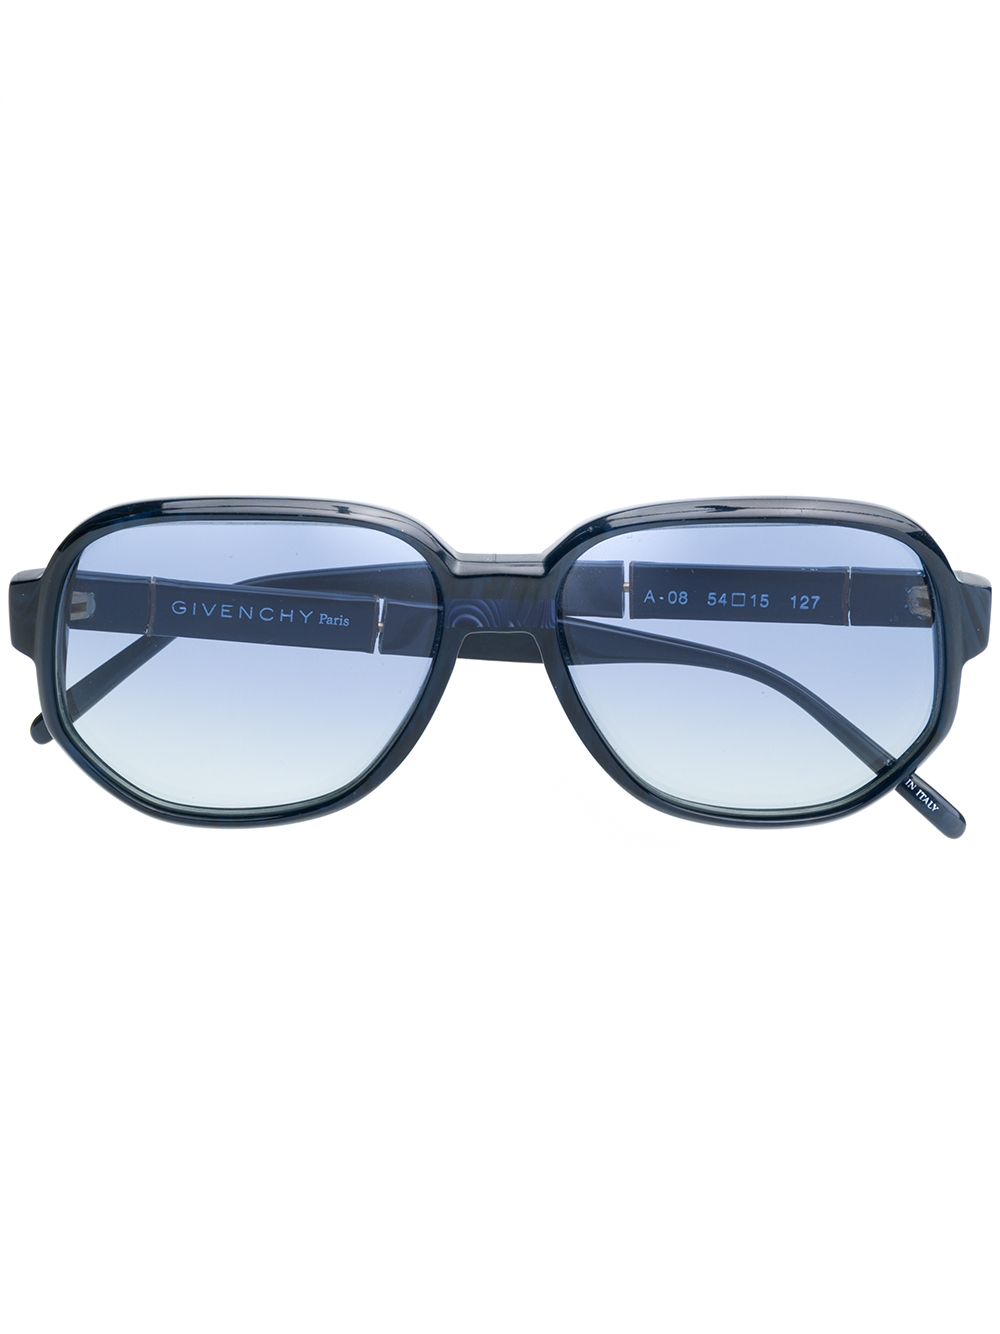 фото Givenchy Pre-Owned солнцезащитные очки 1990-х годов в массивной оправе с эффектом градиента